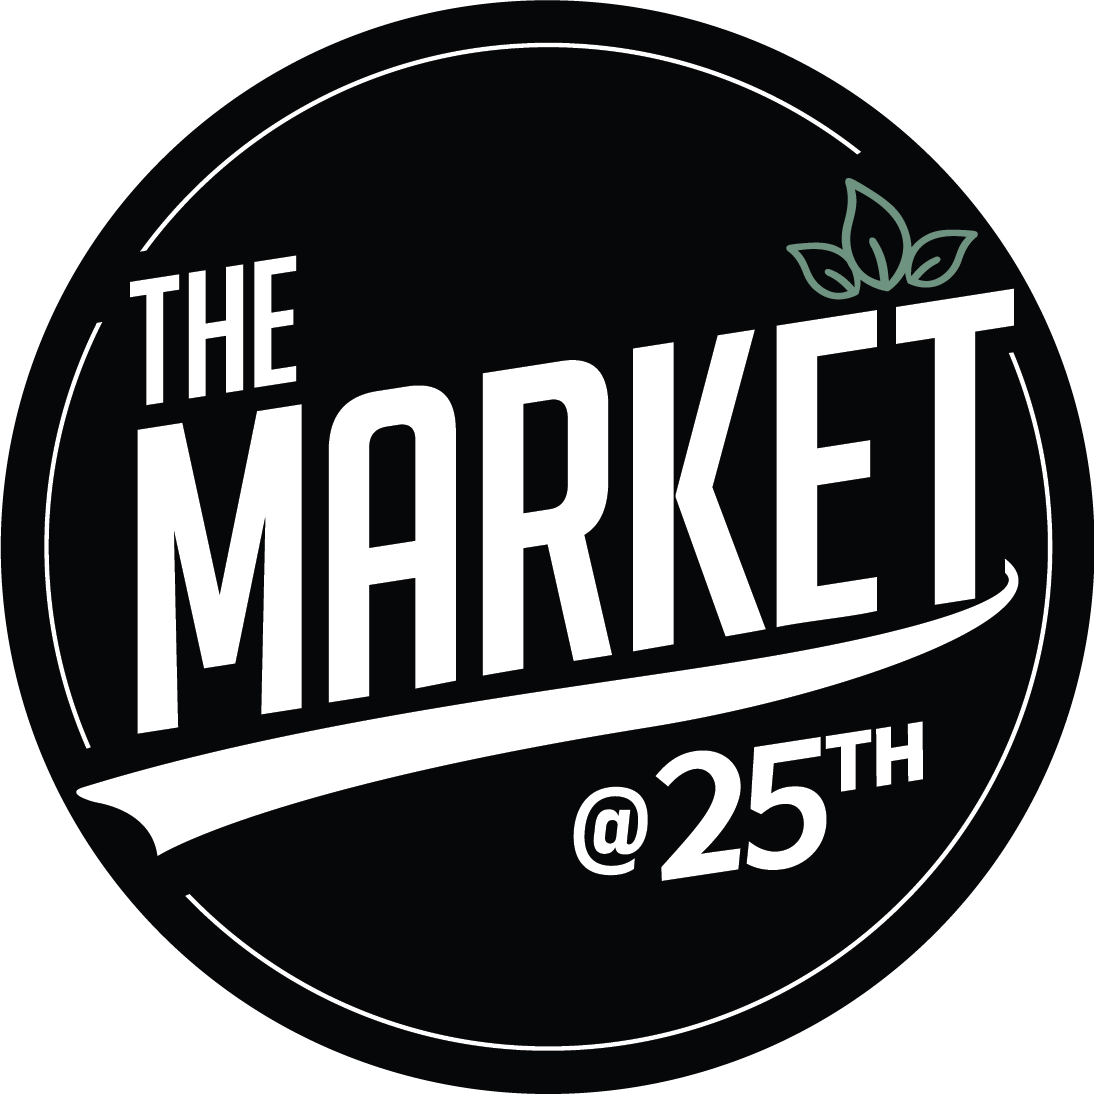 Company logo of The Market at 25th